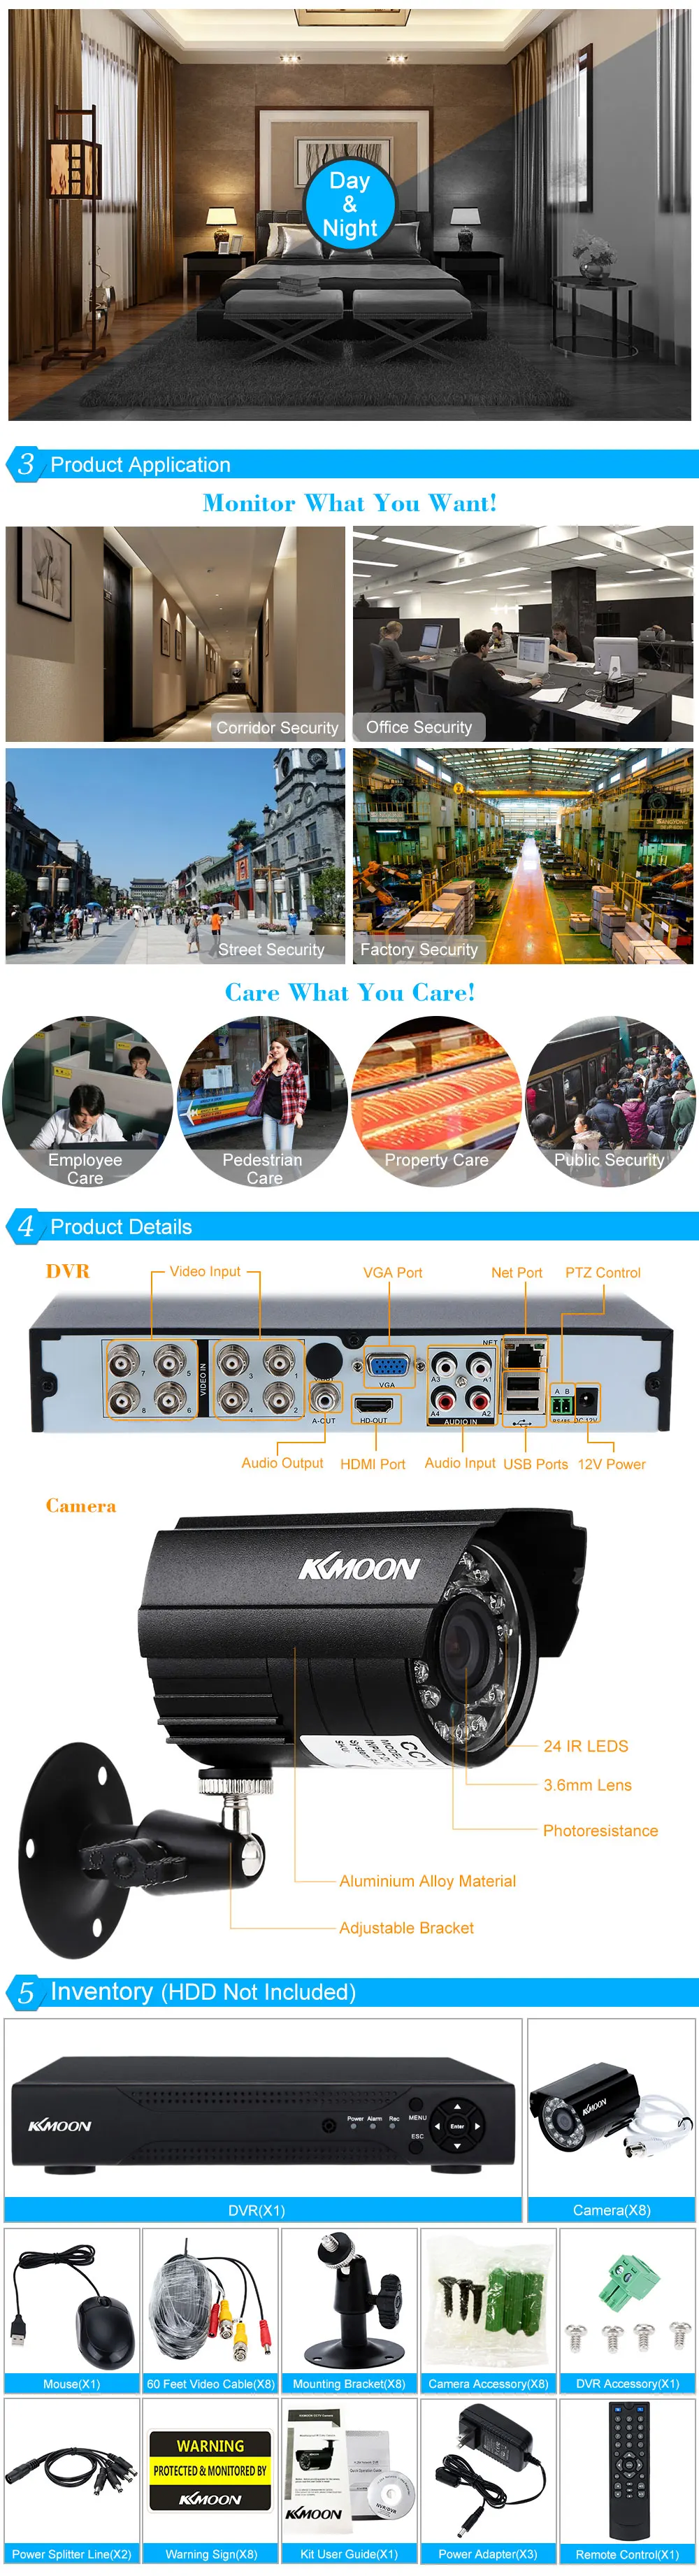 KKMOON 8CH AHD 960H CCTV DVR HDMI с 8 шт 720P IR-CUT День Ночь наружная водонепроницаемая система видеонаблюдения